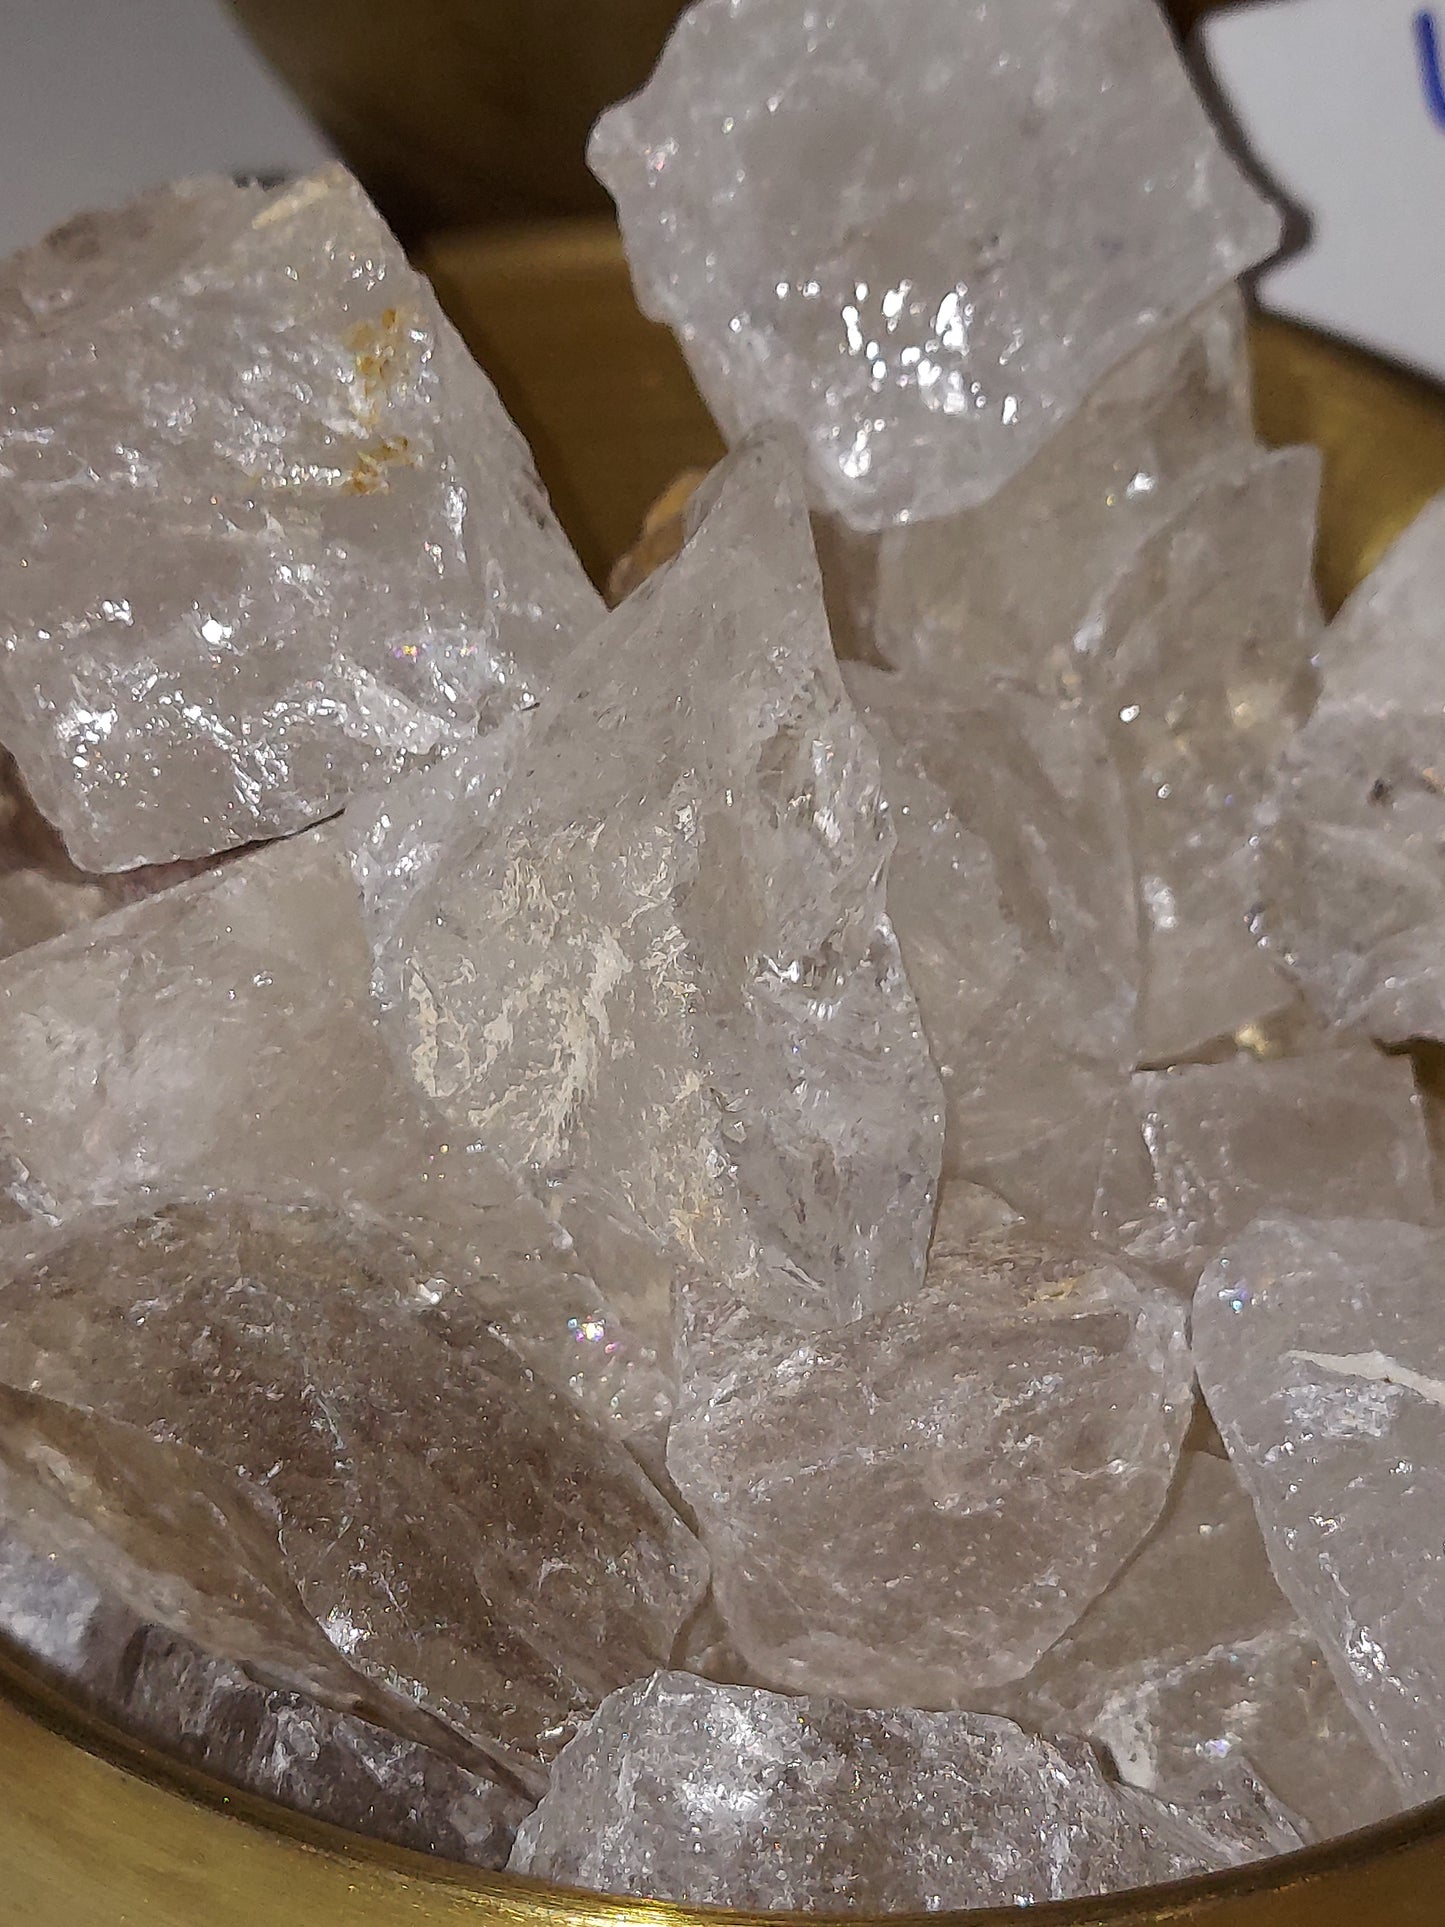 1 Clear Quartz Crystal, apx 1.5"